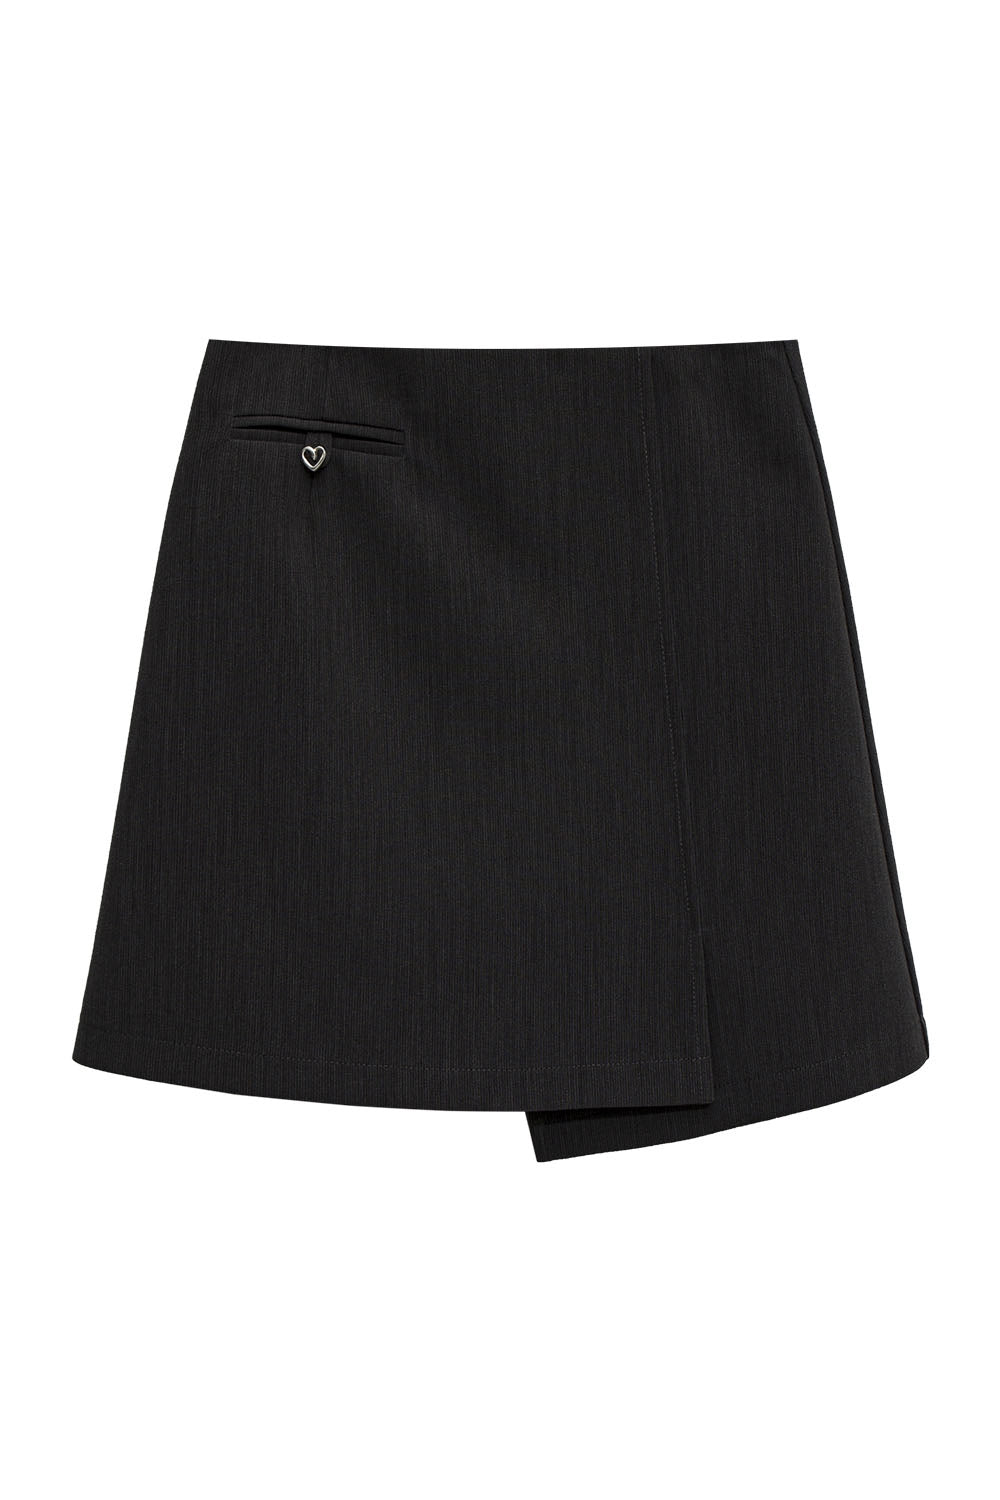 Skirt Mini Disesuaikan Wanita dengan Perincian Poket Depan